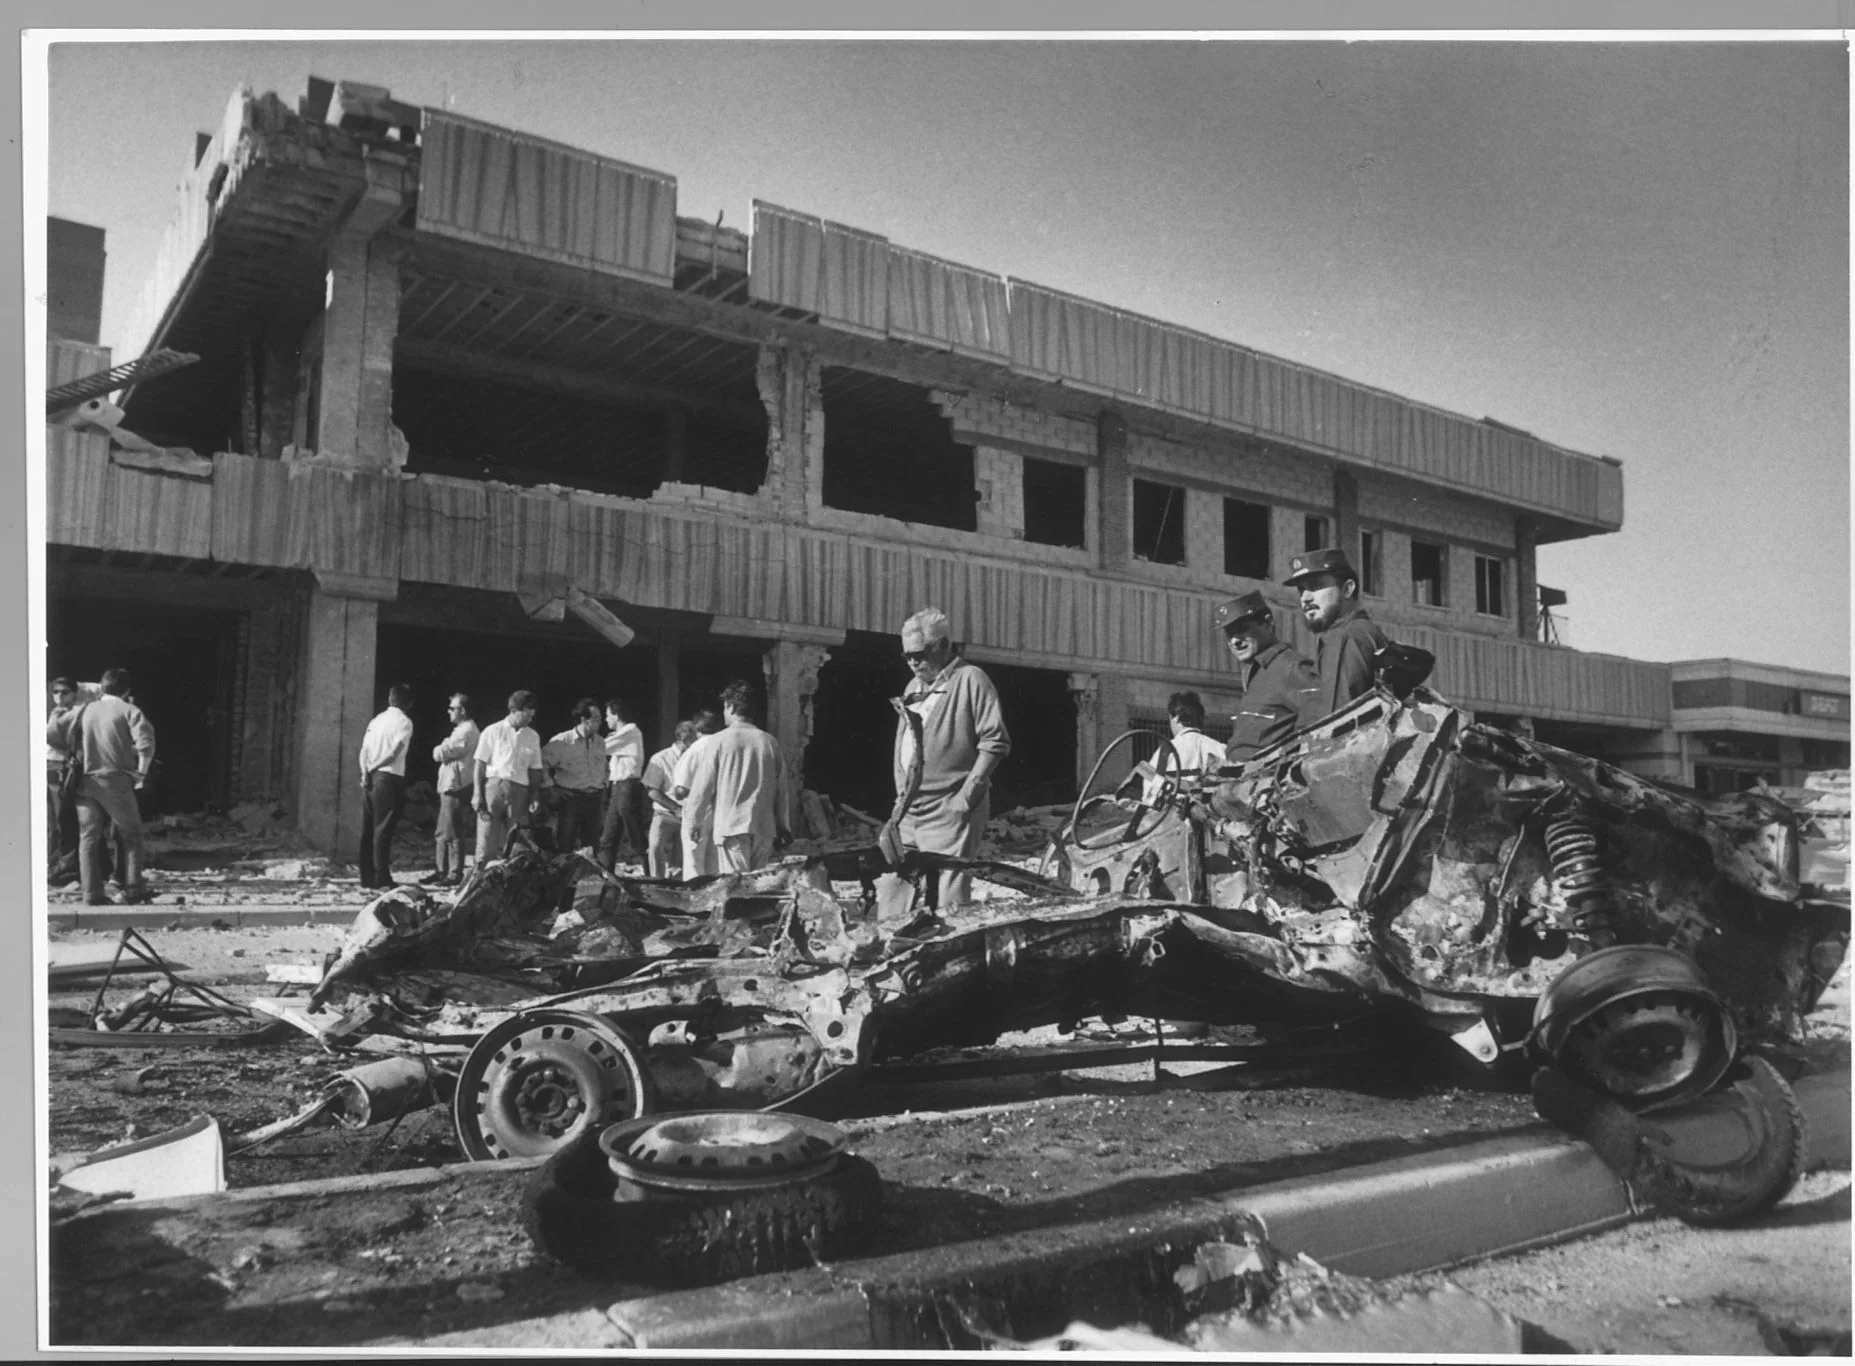 17 de agosto de 1990. Un coche bomba cargado con sesenta kilos de amonal destroza la Comisaría de Policía de Burgos. Hubo medio centenar de heridos leves.